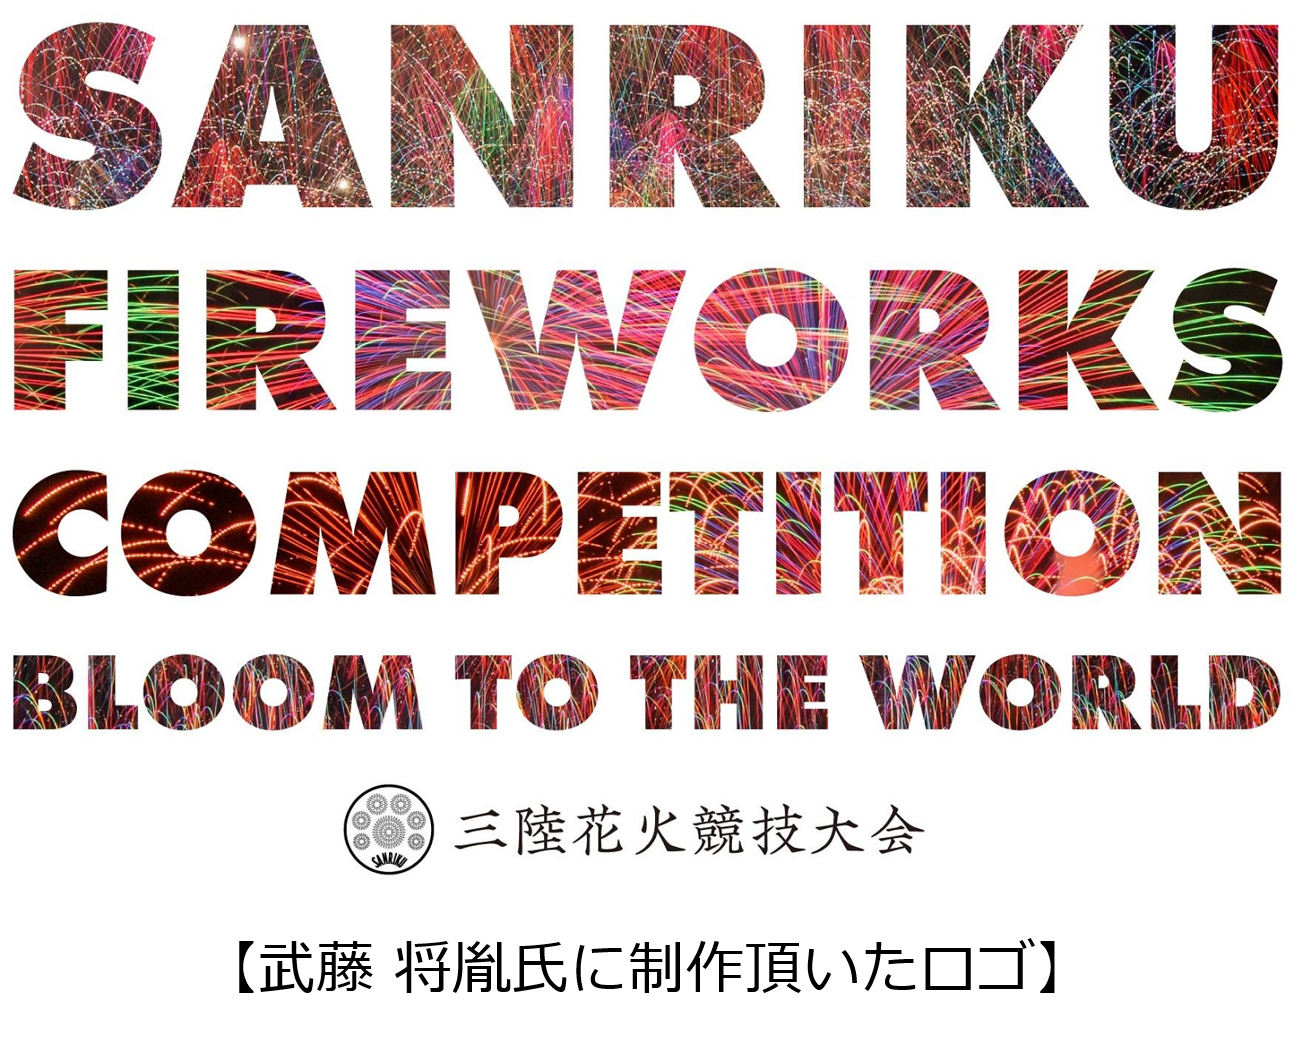 第一回 三陸花火競技大会21のロゴをwith Als代表 武藤 将胤氏が視線だけで制作 Fireworks株式会社のプレスリリース